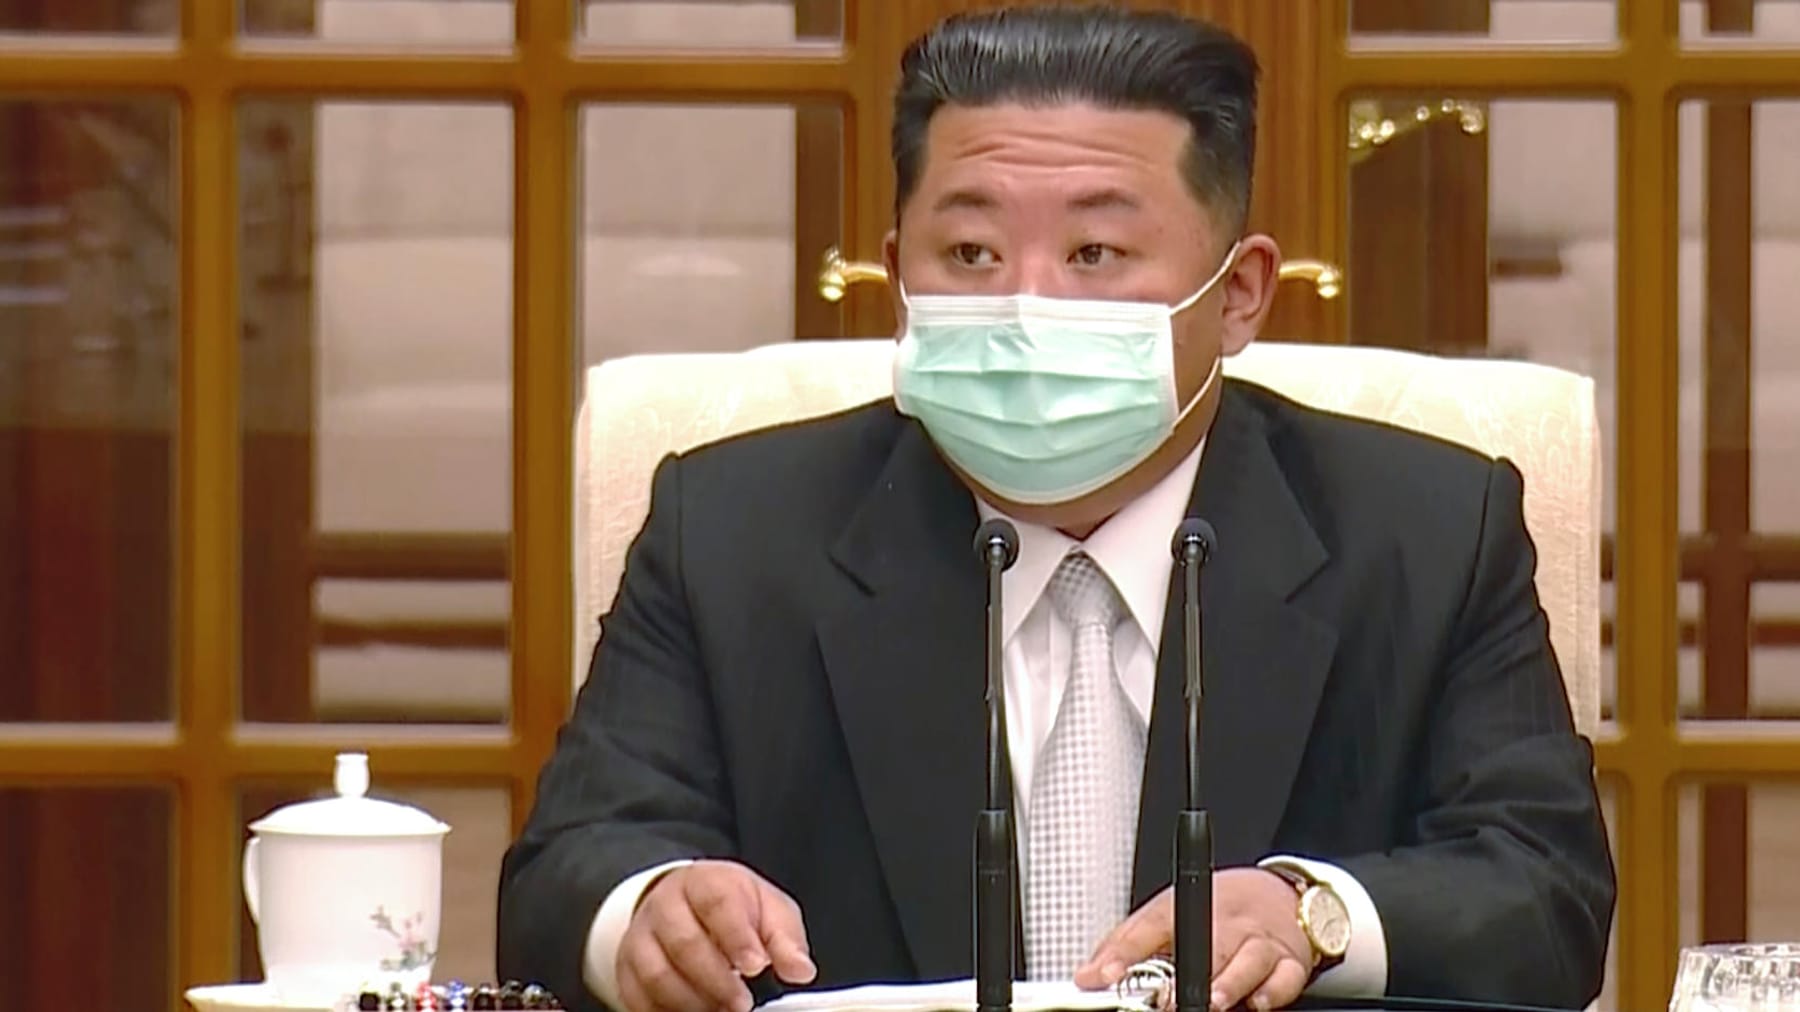 Corona-Lage-in-Nordkorea-spitzt-sich-zu-Weitere-Todesf-lle-wegen-Fiebers-gemeldet